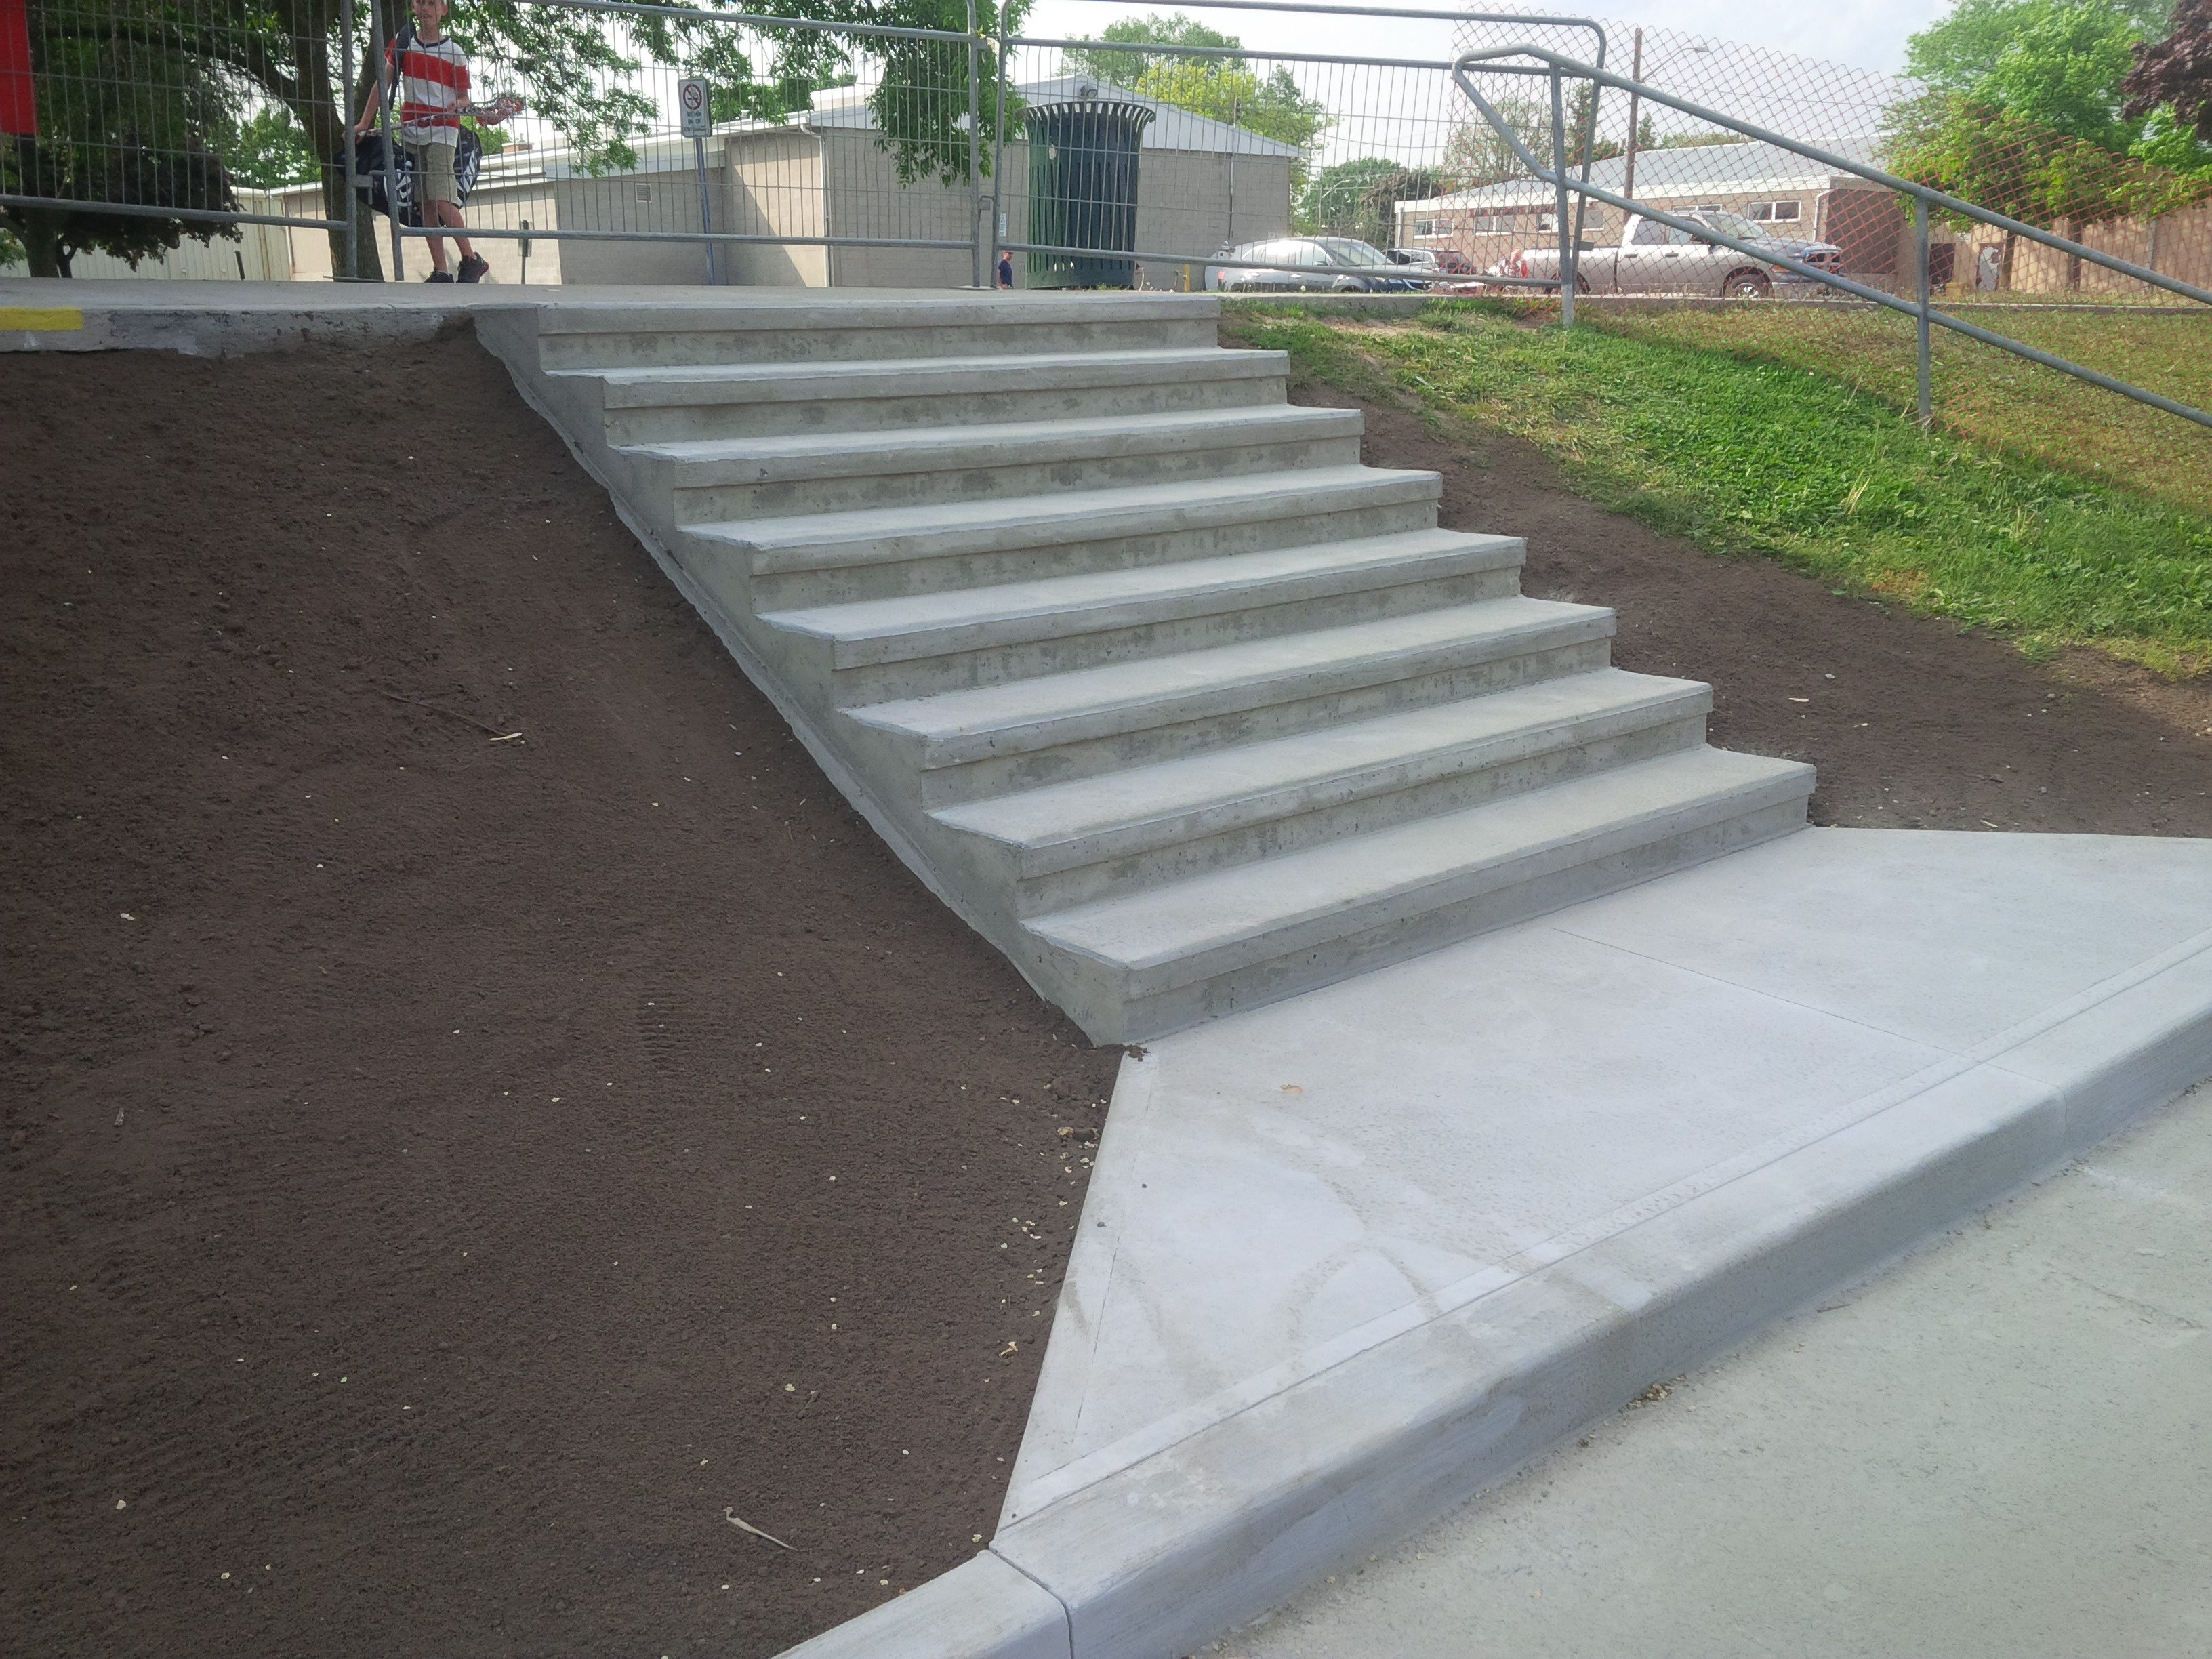 Concrete stairs at Preston Memorial Auditorium